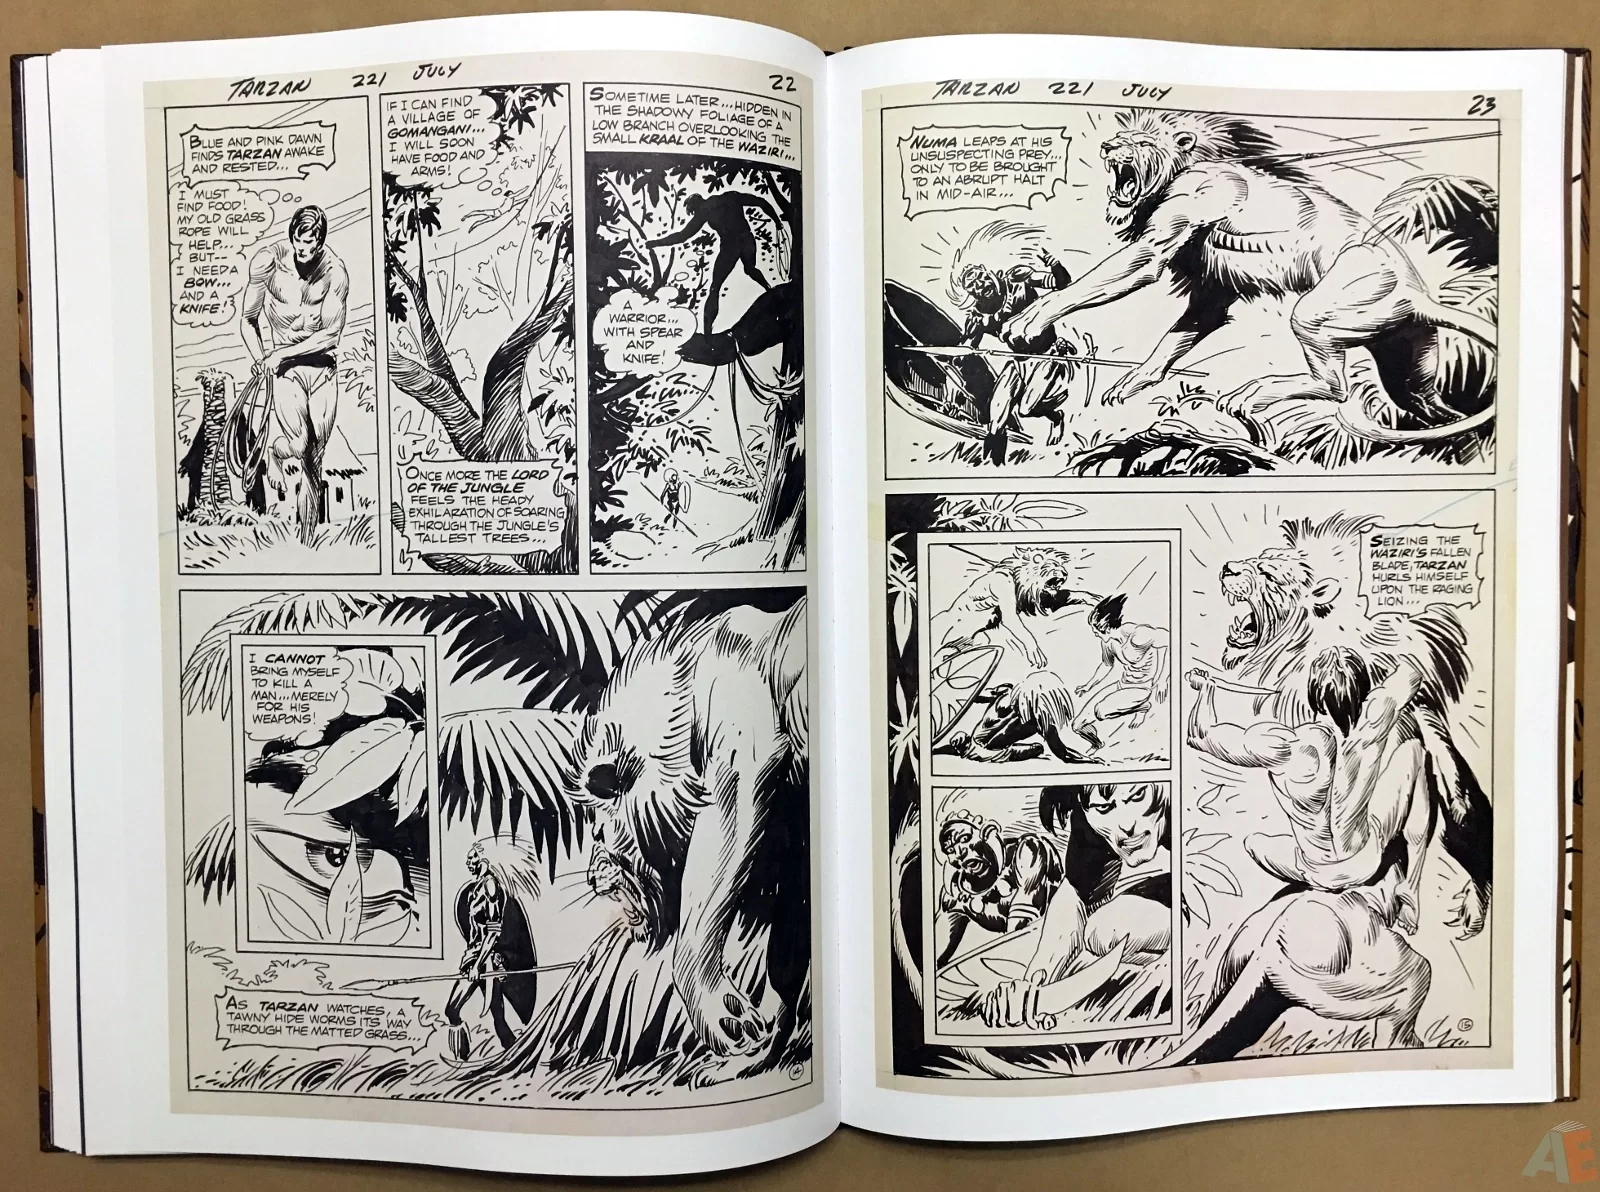 Joe Kubert’s The Return Of Tarzan Artist’s Edition